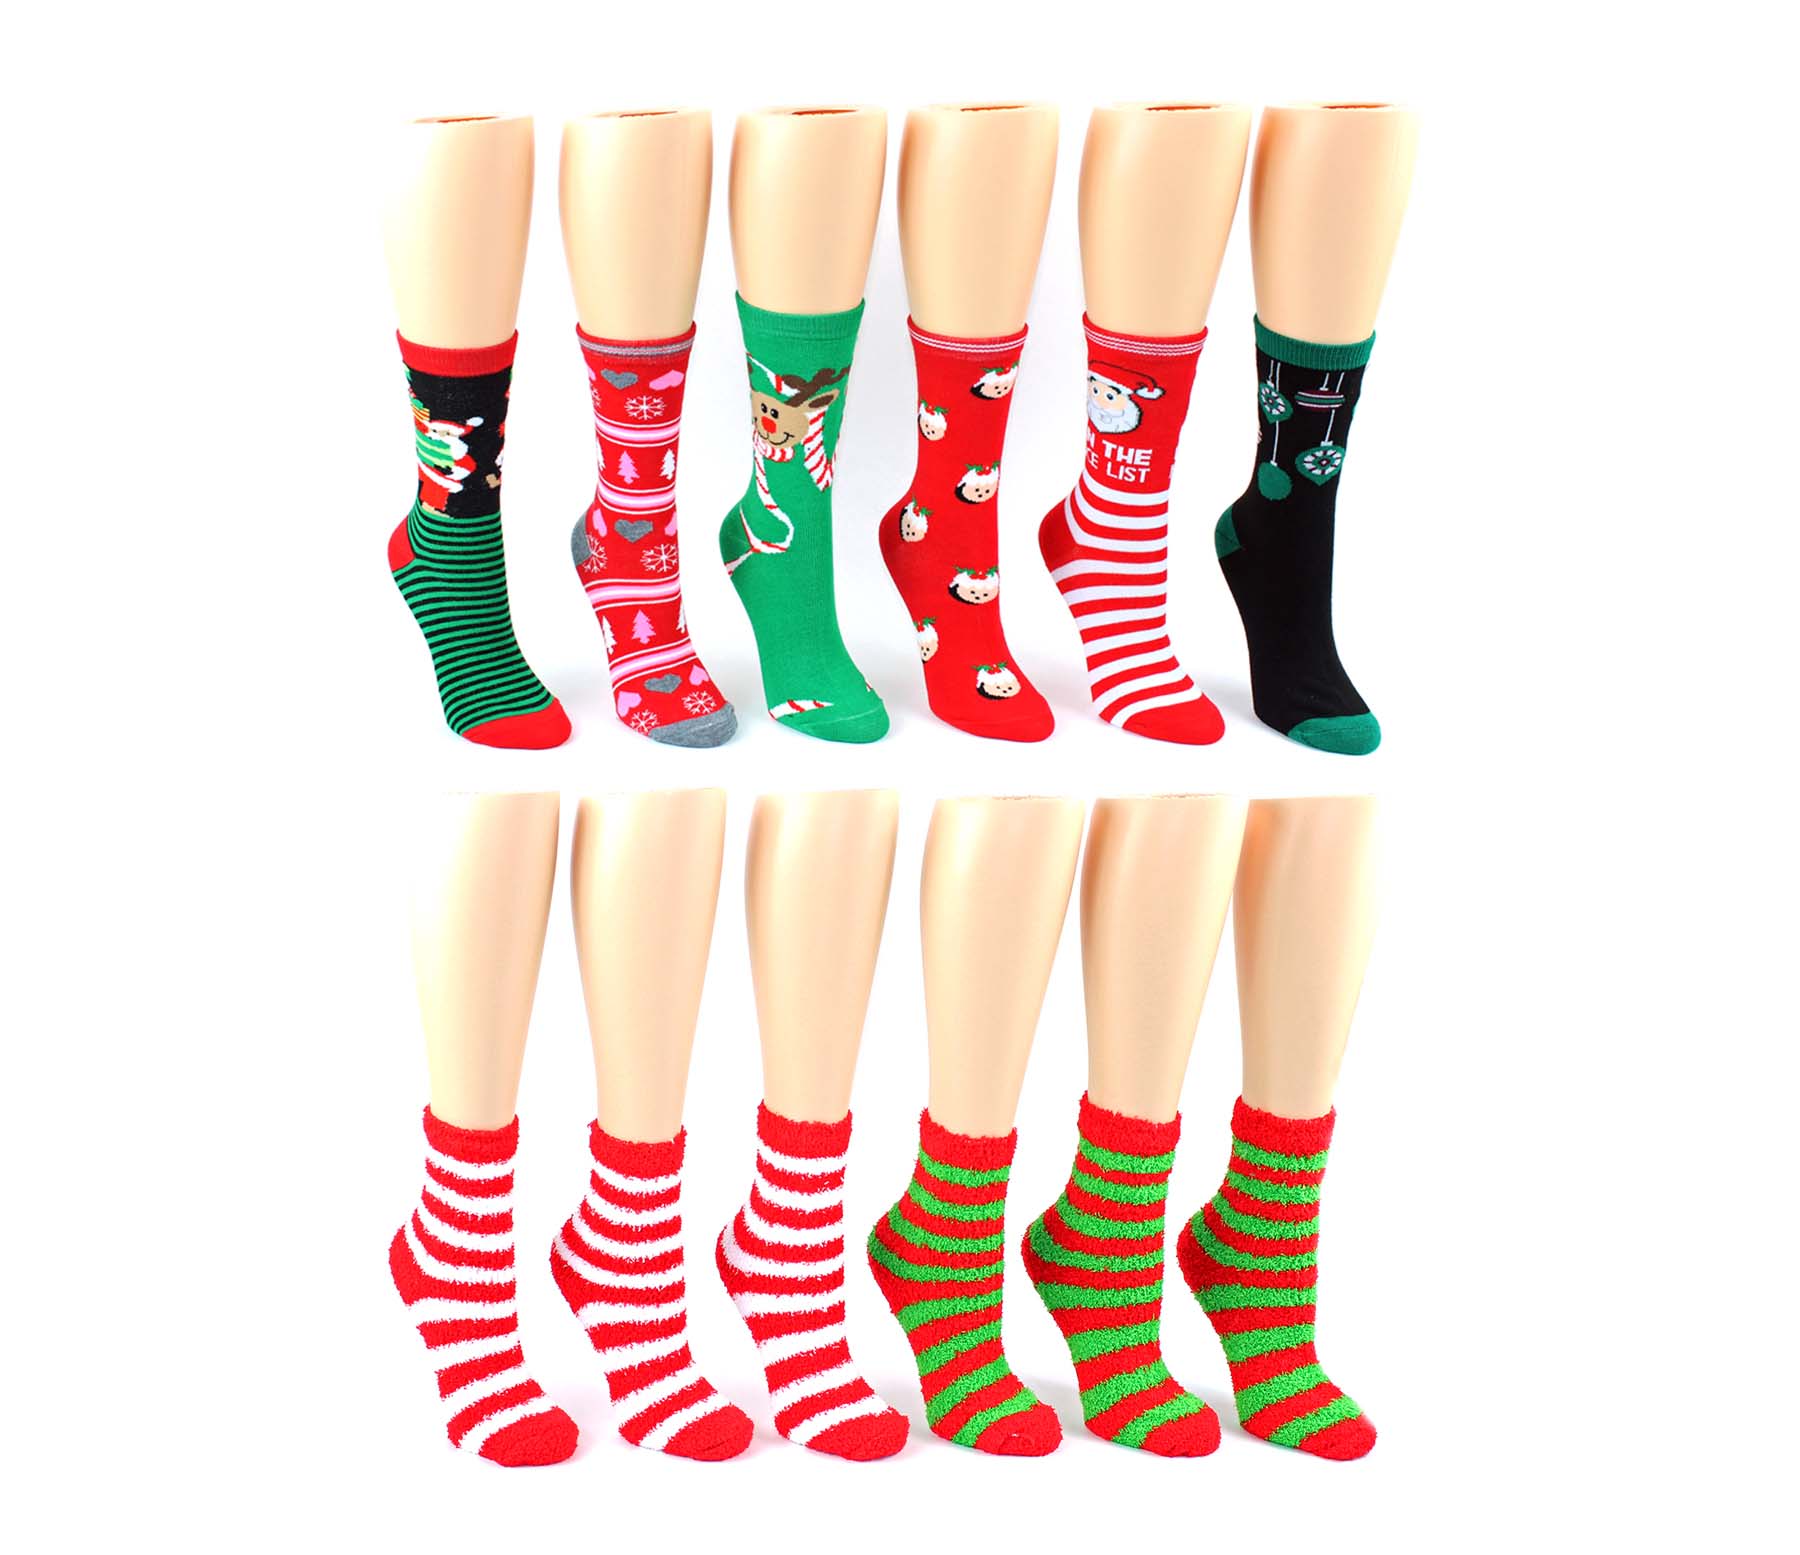 Wholesale Women's Holiday Socks | Eros Wholesale | eroswholesale.com